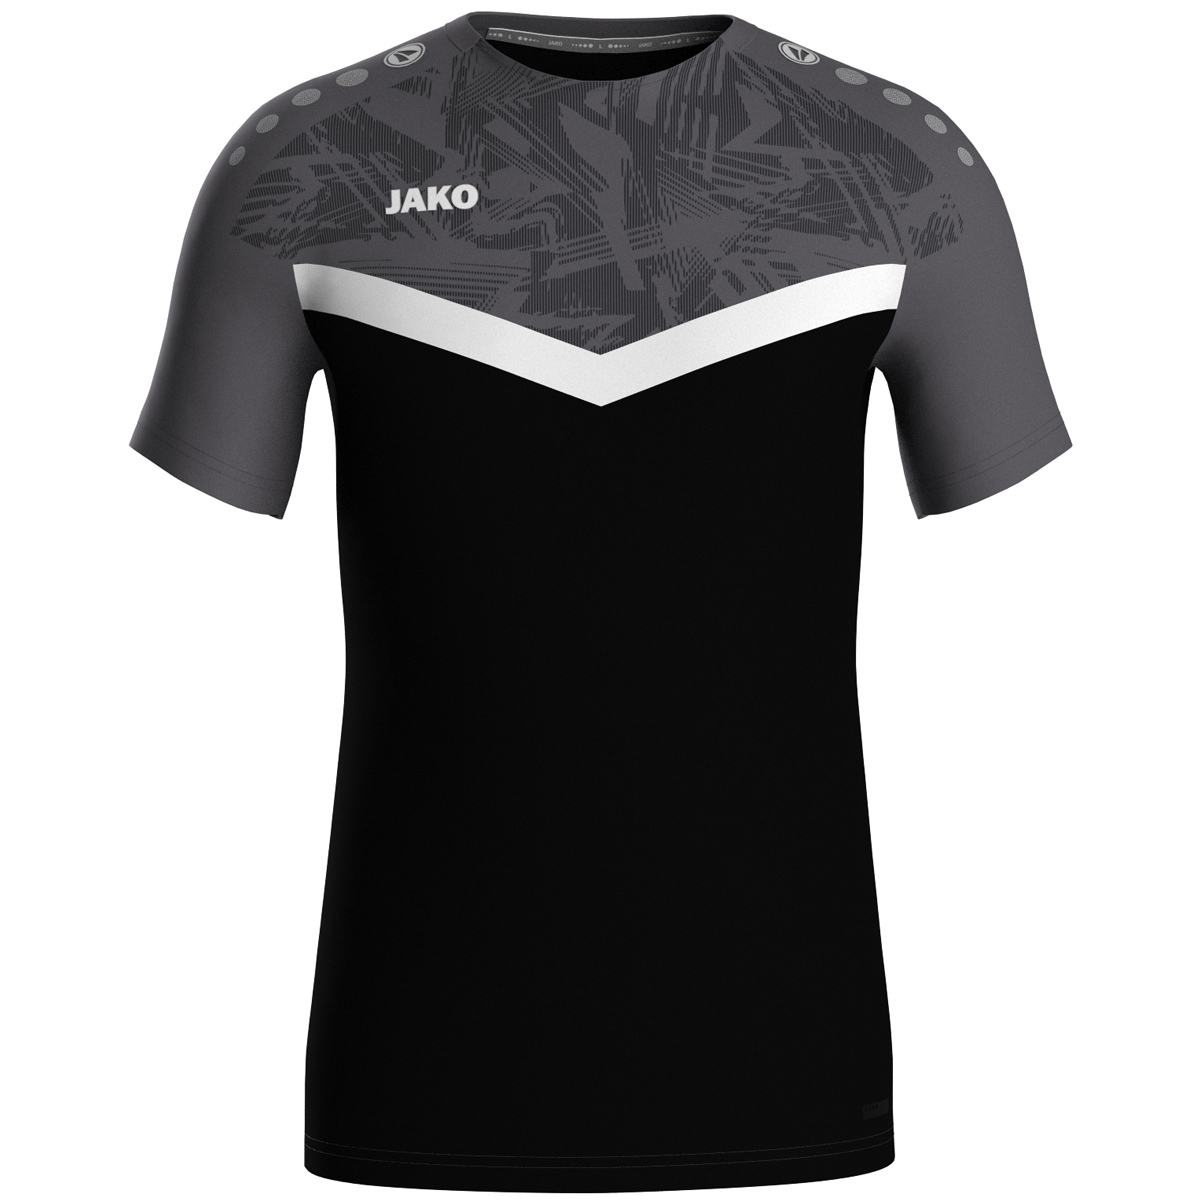 JAKO T-Shirt Iconic, XL, schwarz/anthrazit